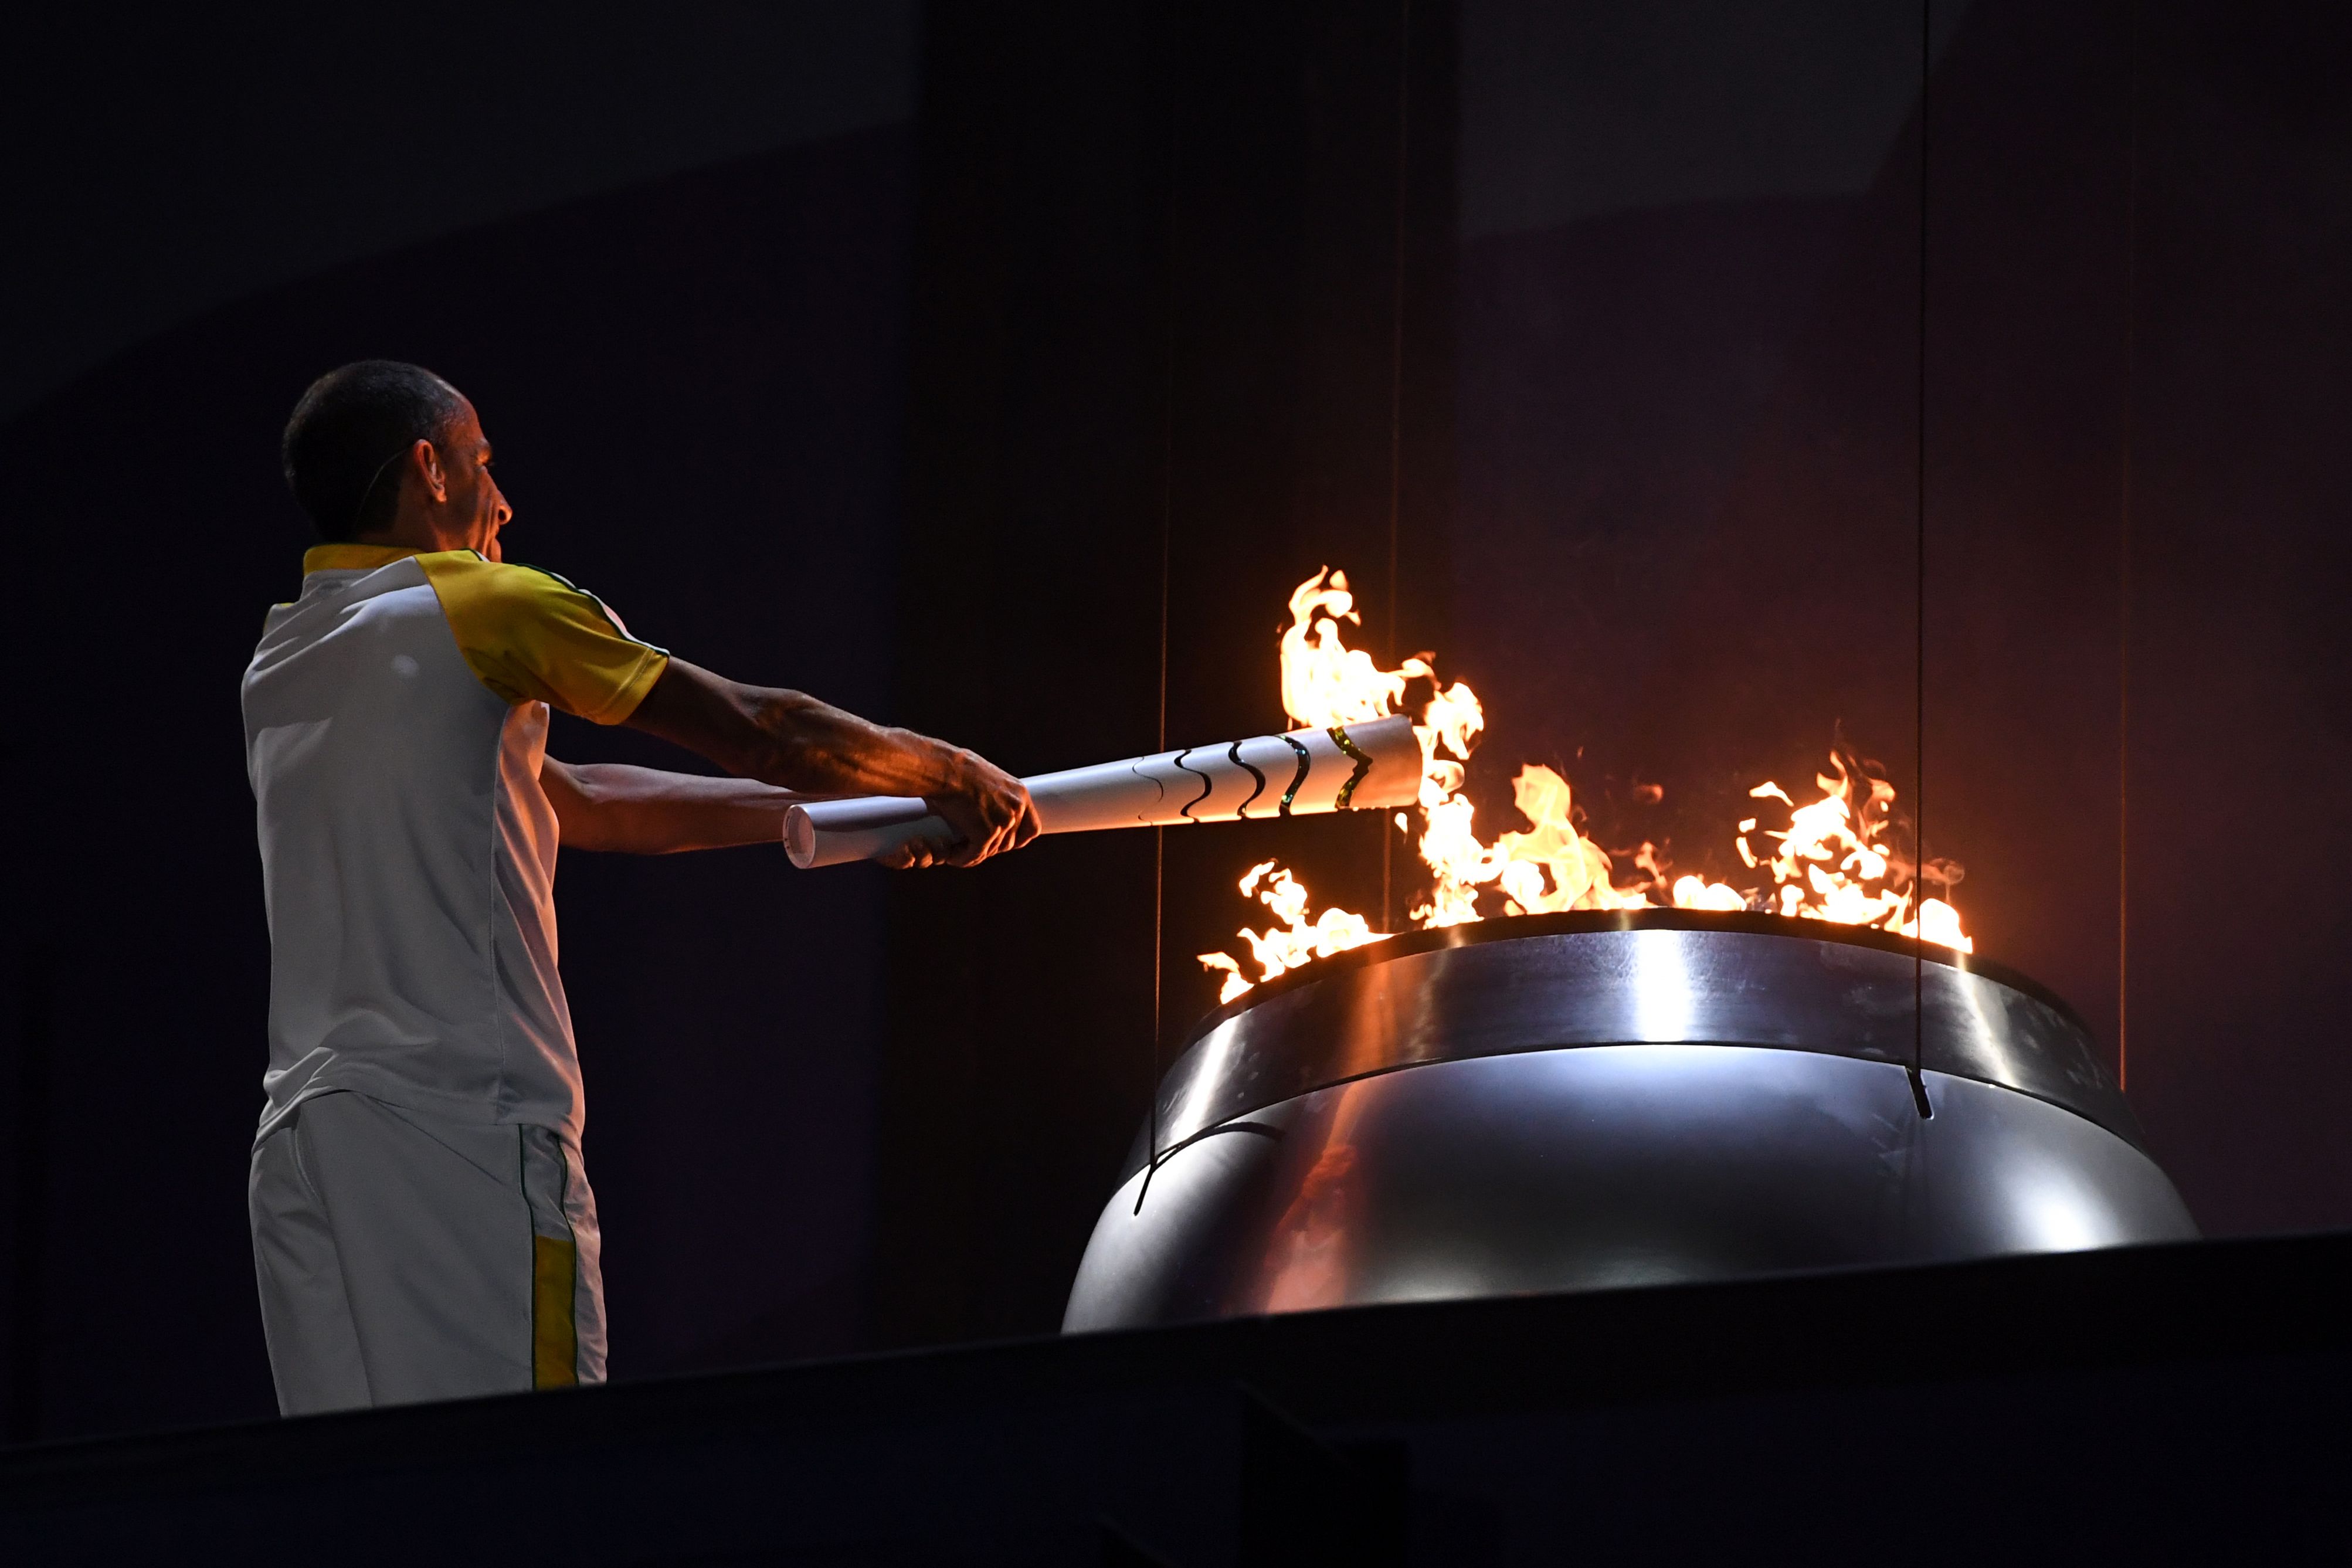 Олимпийский огонь современных игр зажигается. Факел олимпийского огня Олимпийских игр зажигается. Зажжение олимпийского огня 2016. Олимпийские игры в Рио де Жанейро 2016 Олимпийский огонь. Олимпийских игр 2016 года в Рио-де-Жанейро зажжение огня.